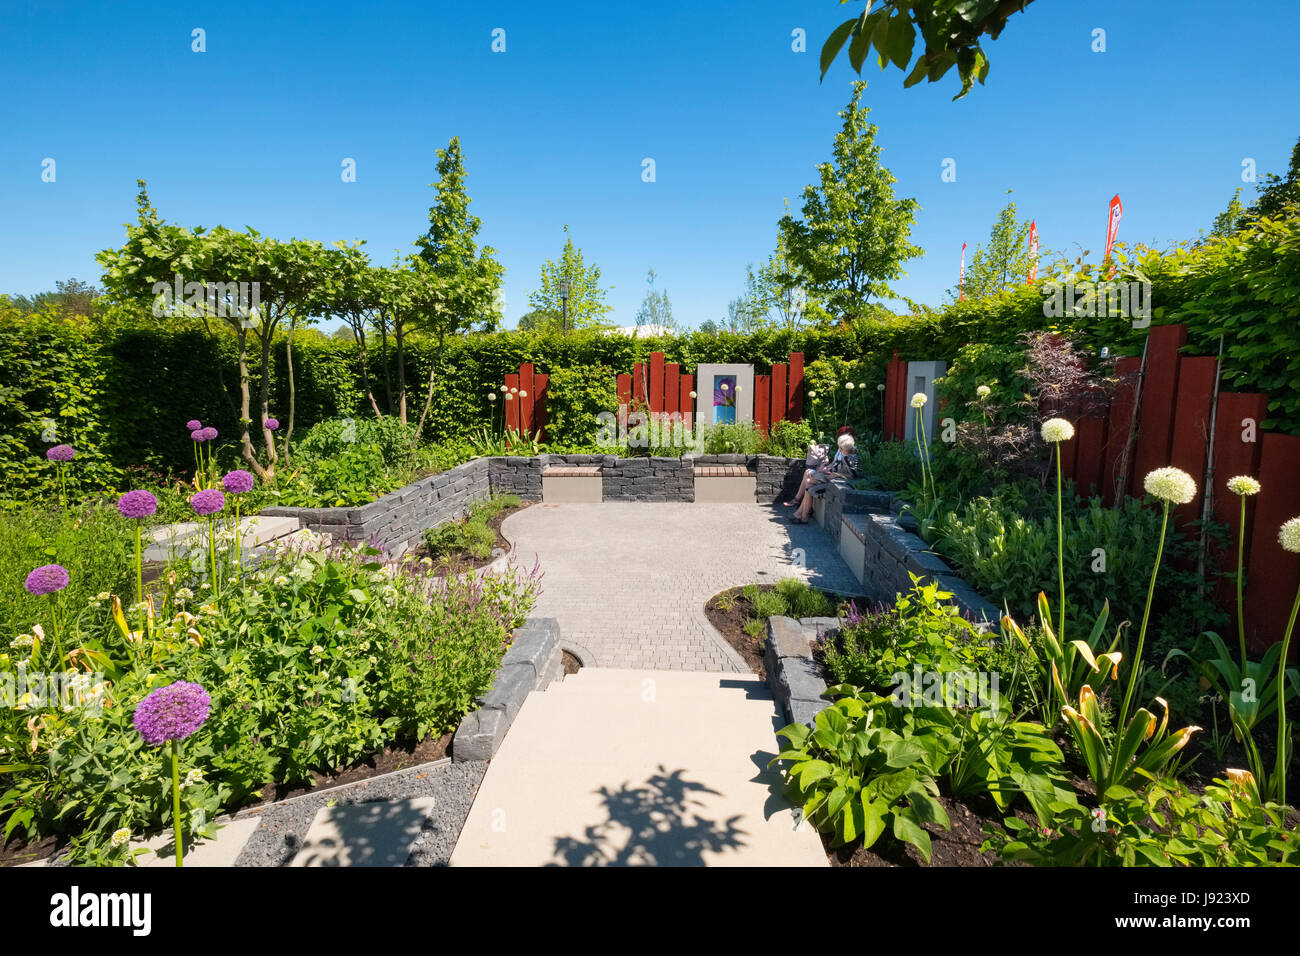 Un changement de point de vue jardin, l'un des paramètres de jardin , des idées pour les jardins urbains, chez IGA 2017 Festival International des jardins (International Garten Banque D'Images